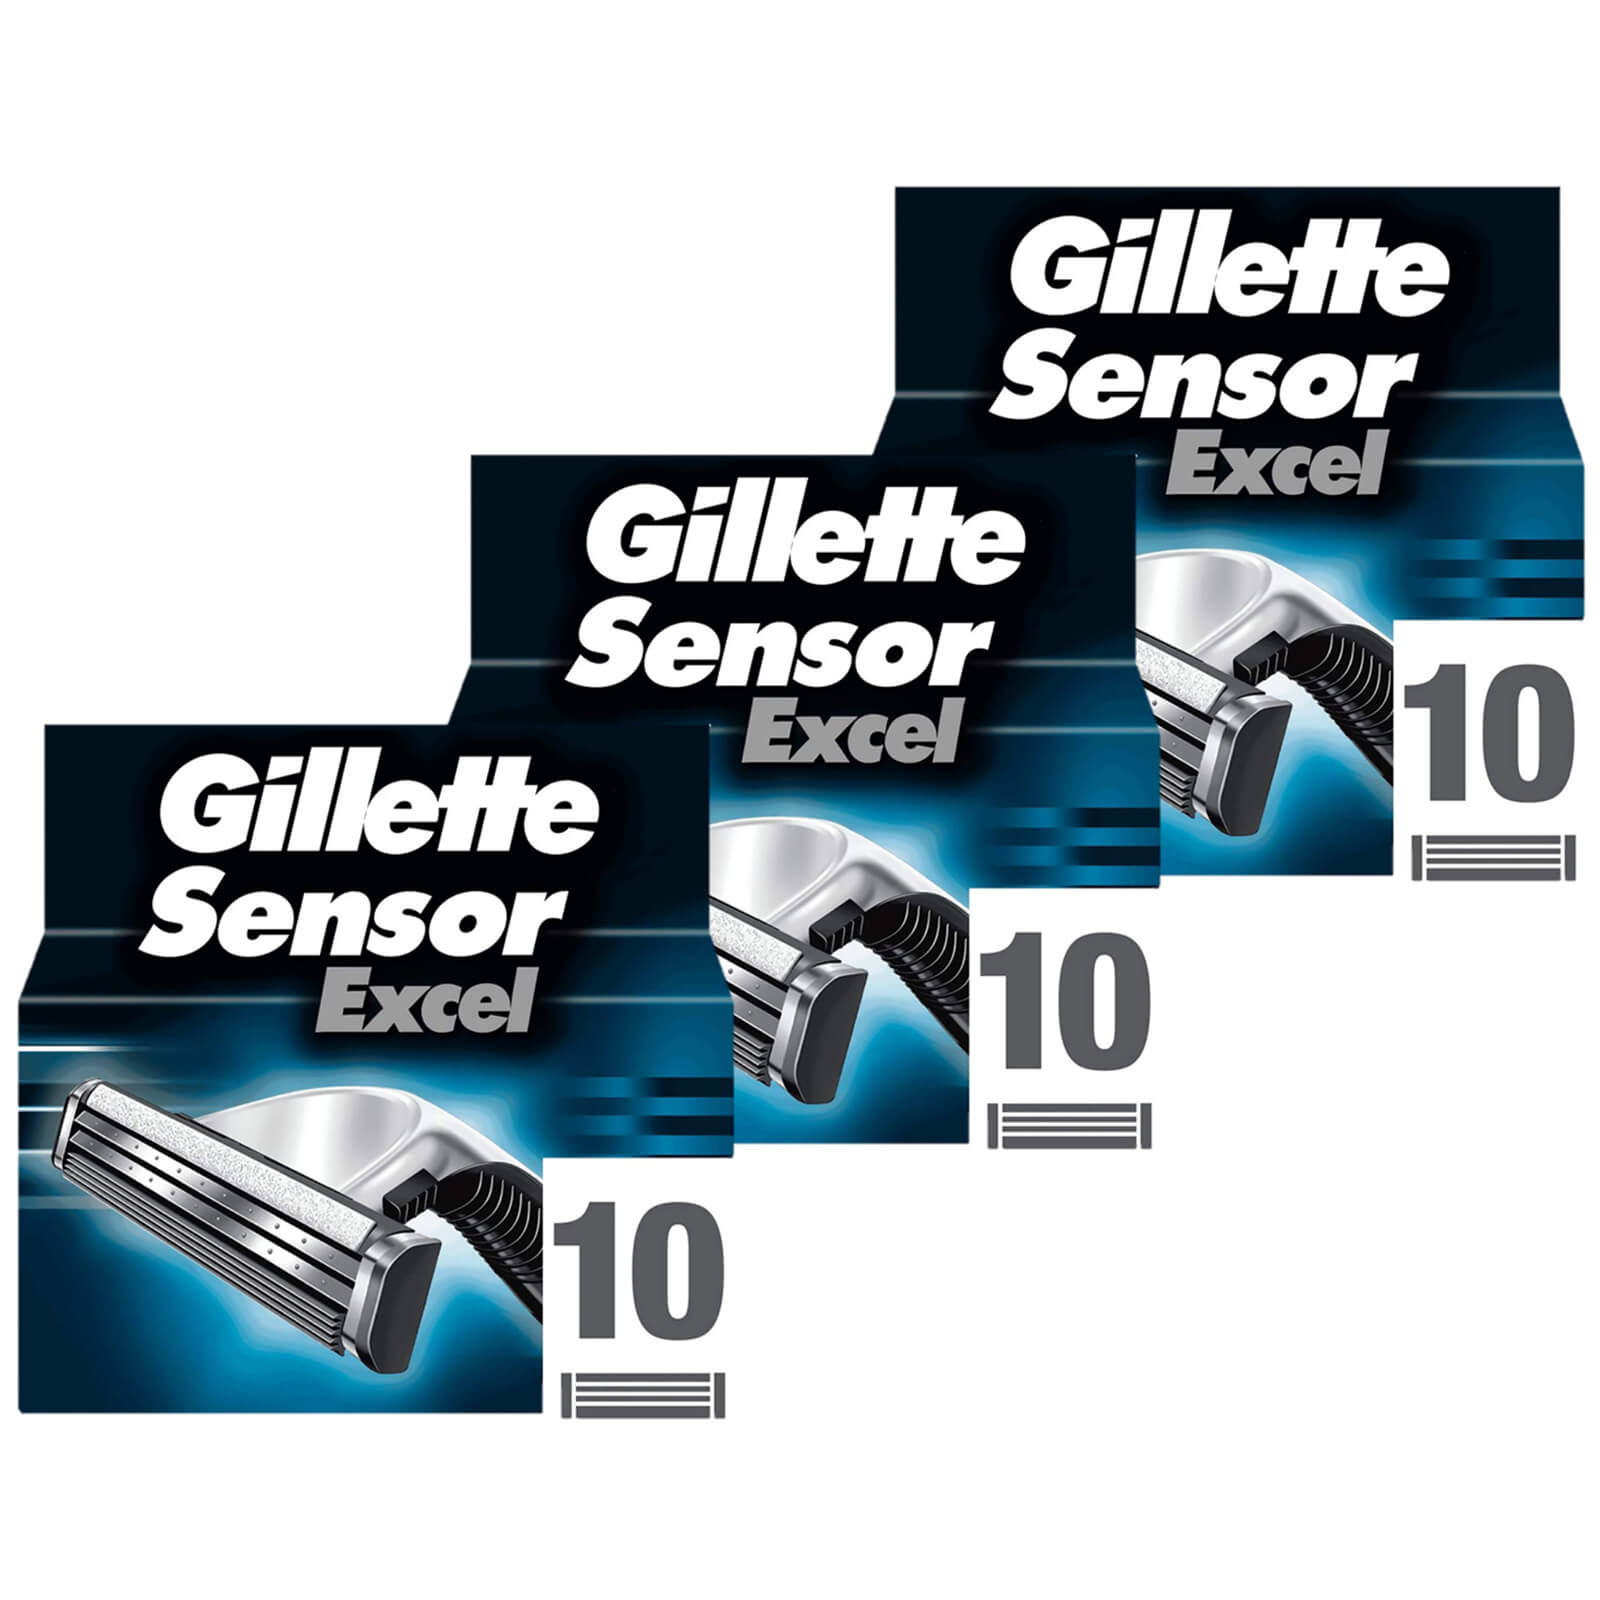 Gillette Sensor Excel Razor Blades - 30 Pack - 3 Months